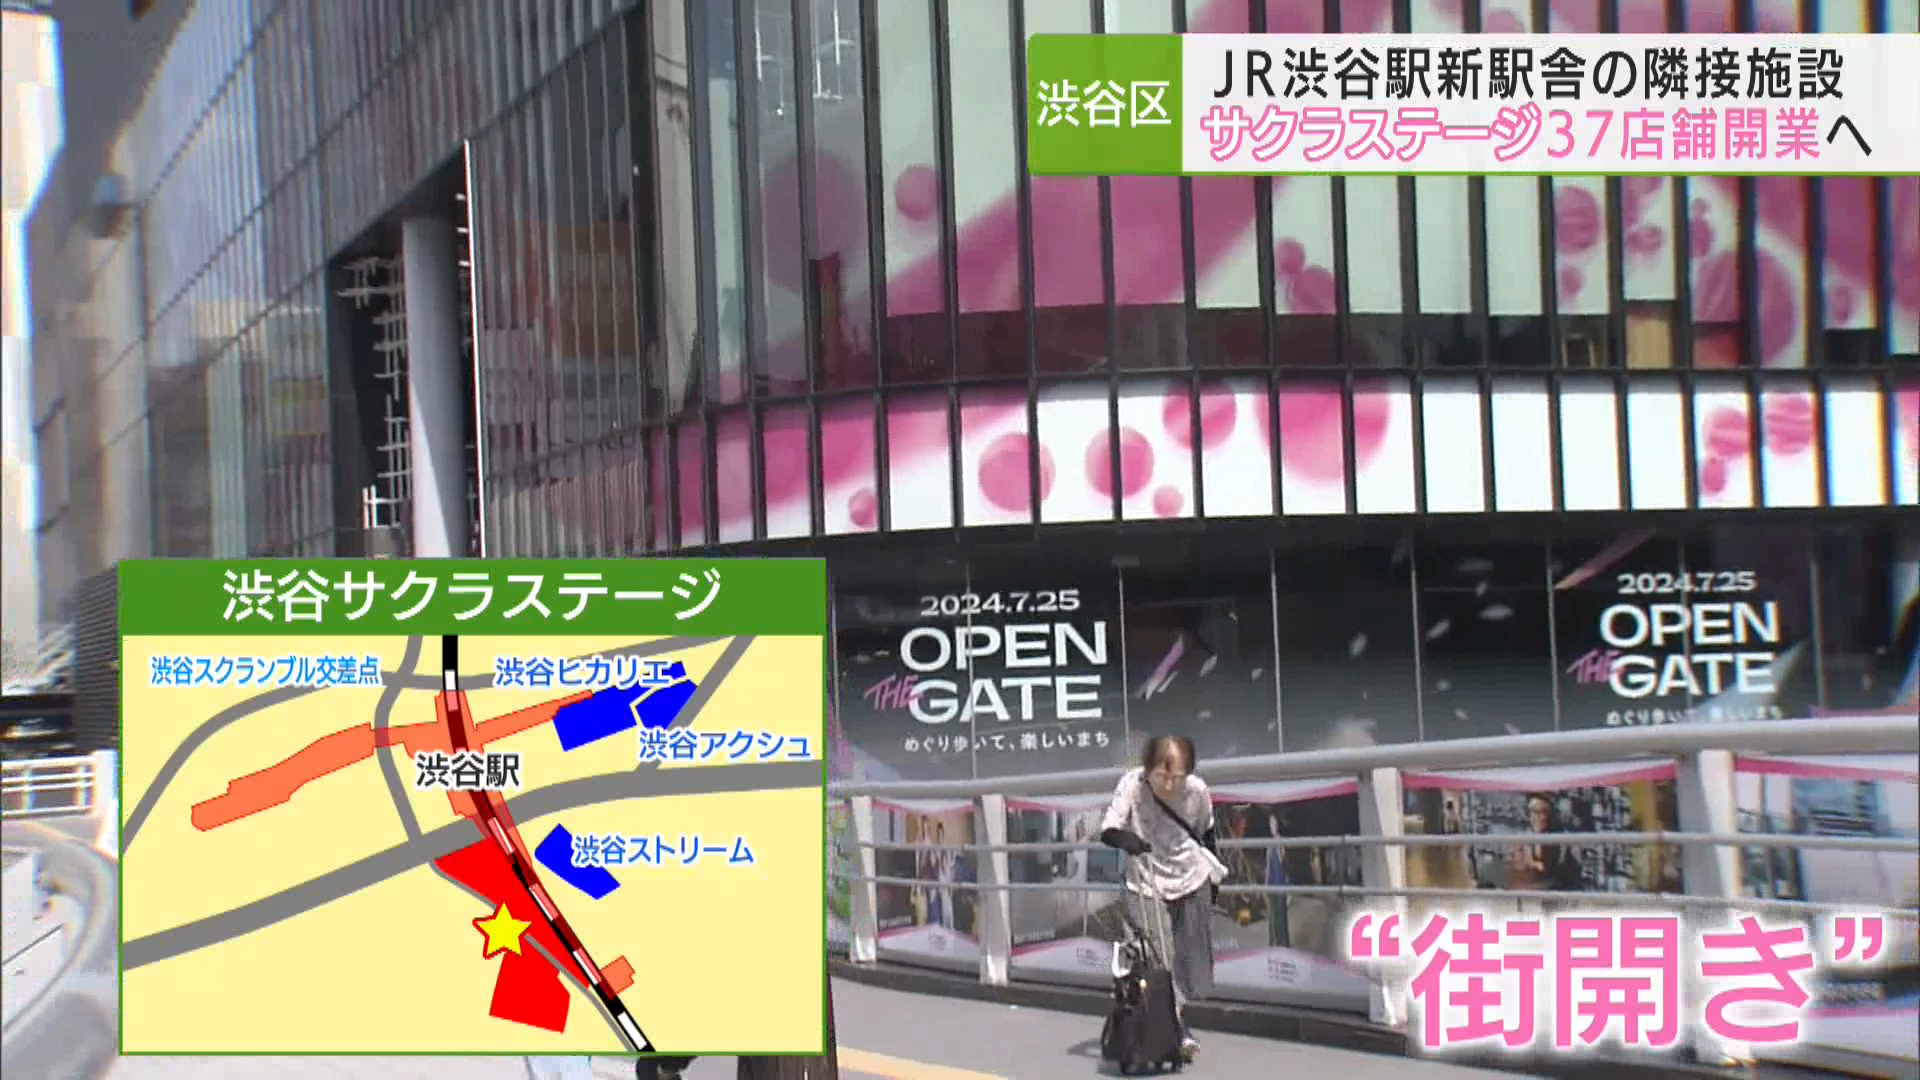 100年に一度の再開発が進む渋谷の街が、また進化です。今度の日曜日にJR渋谷駅の新駅舎が誕生し、新たな歩行者ネットワークが完成します。さらに来週木曜日（7月25日）には、新駅舎に隣接する施設、渋谷サクラステージが本格始動。37の店舗が一挙オープンとなり「新たな渋谷の顔」を目指します。